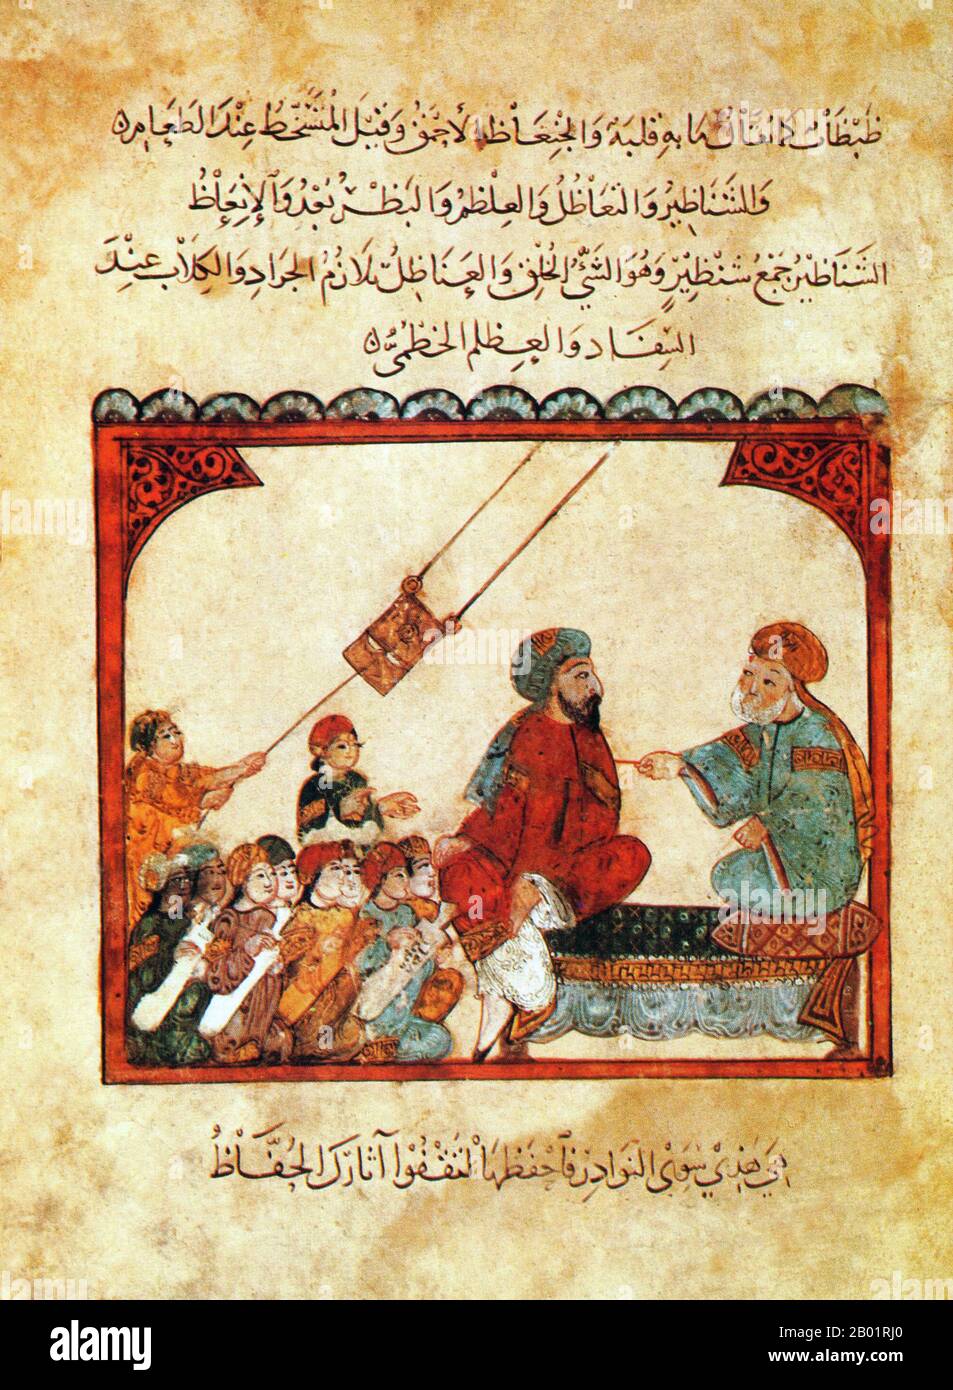 Iraq: Scena in un maktab o una scuola religiosa, uno studente che tira un fan. Pittura in miniatura di Yahya ibn Mahmud al-Wasiti, 1237 d.C. Yahyâ ibn Mahmûd al-Wâsitî è stato un artista arabo islamico del XIII secolo. Al-Wasiti è nato a Wasit, nel sud dell'Iraq. Era noto per le sue illustrazioni del Maqam di al-Hariri. I Maqāma (letteralmente "assemblee") sono un genere letterario arabo (originariamente) di prosa rimata con intervalli di poesia in cui la stravaganza retorica è evidente. Si dice che l'autore del X secolo Badī' al-Zaman al-Hamadhāni abbia inventato la forma, che fu estesa da al-Hariri di Bassora. Foto Stock